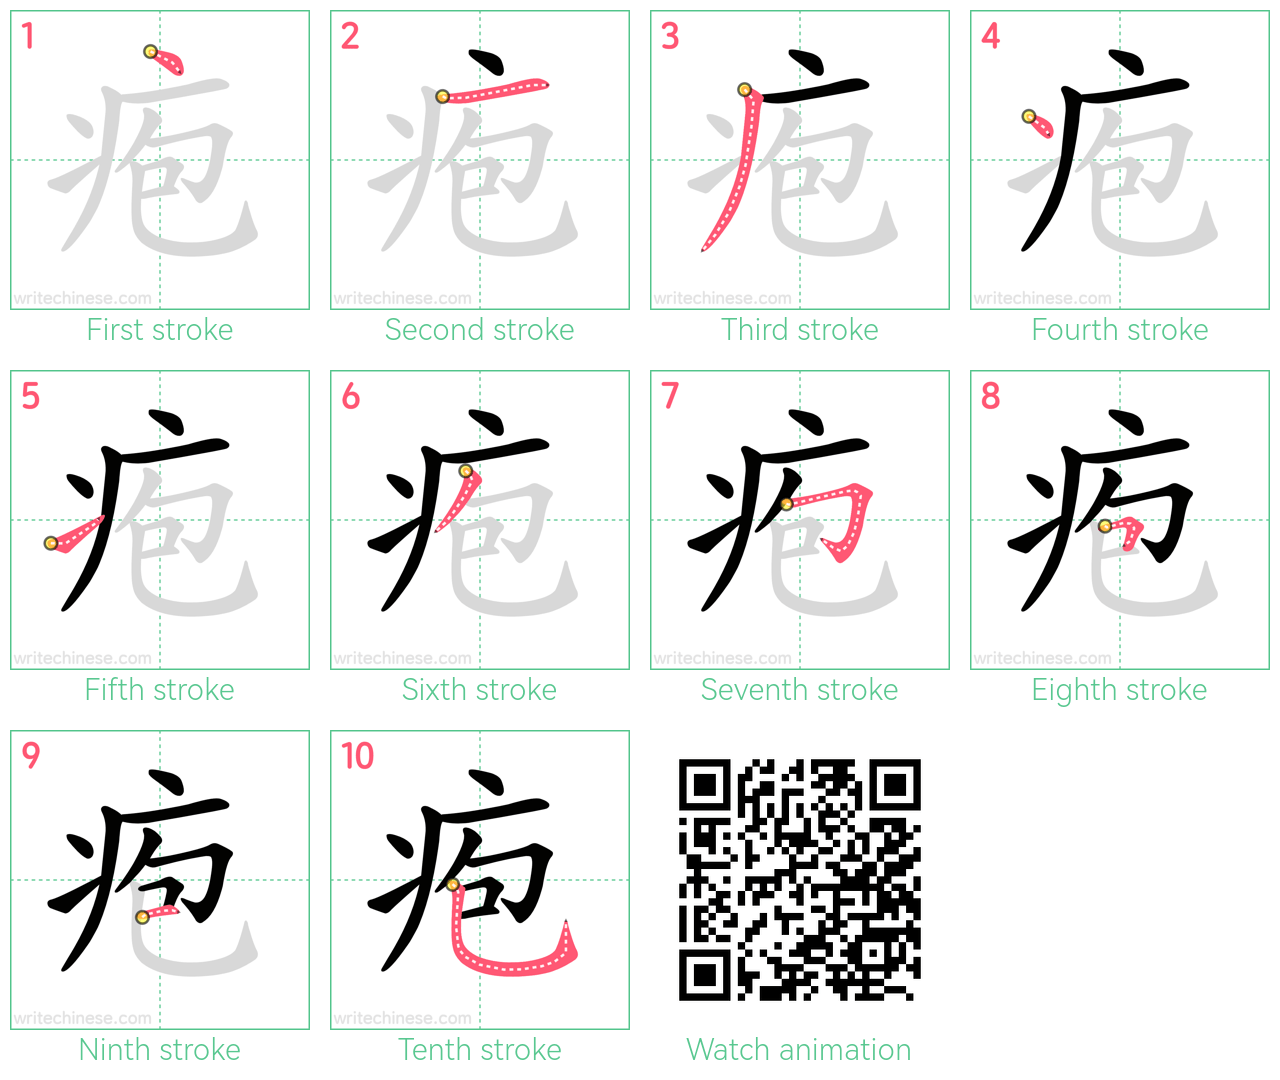 疱 step-by-step stroke order diagrams